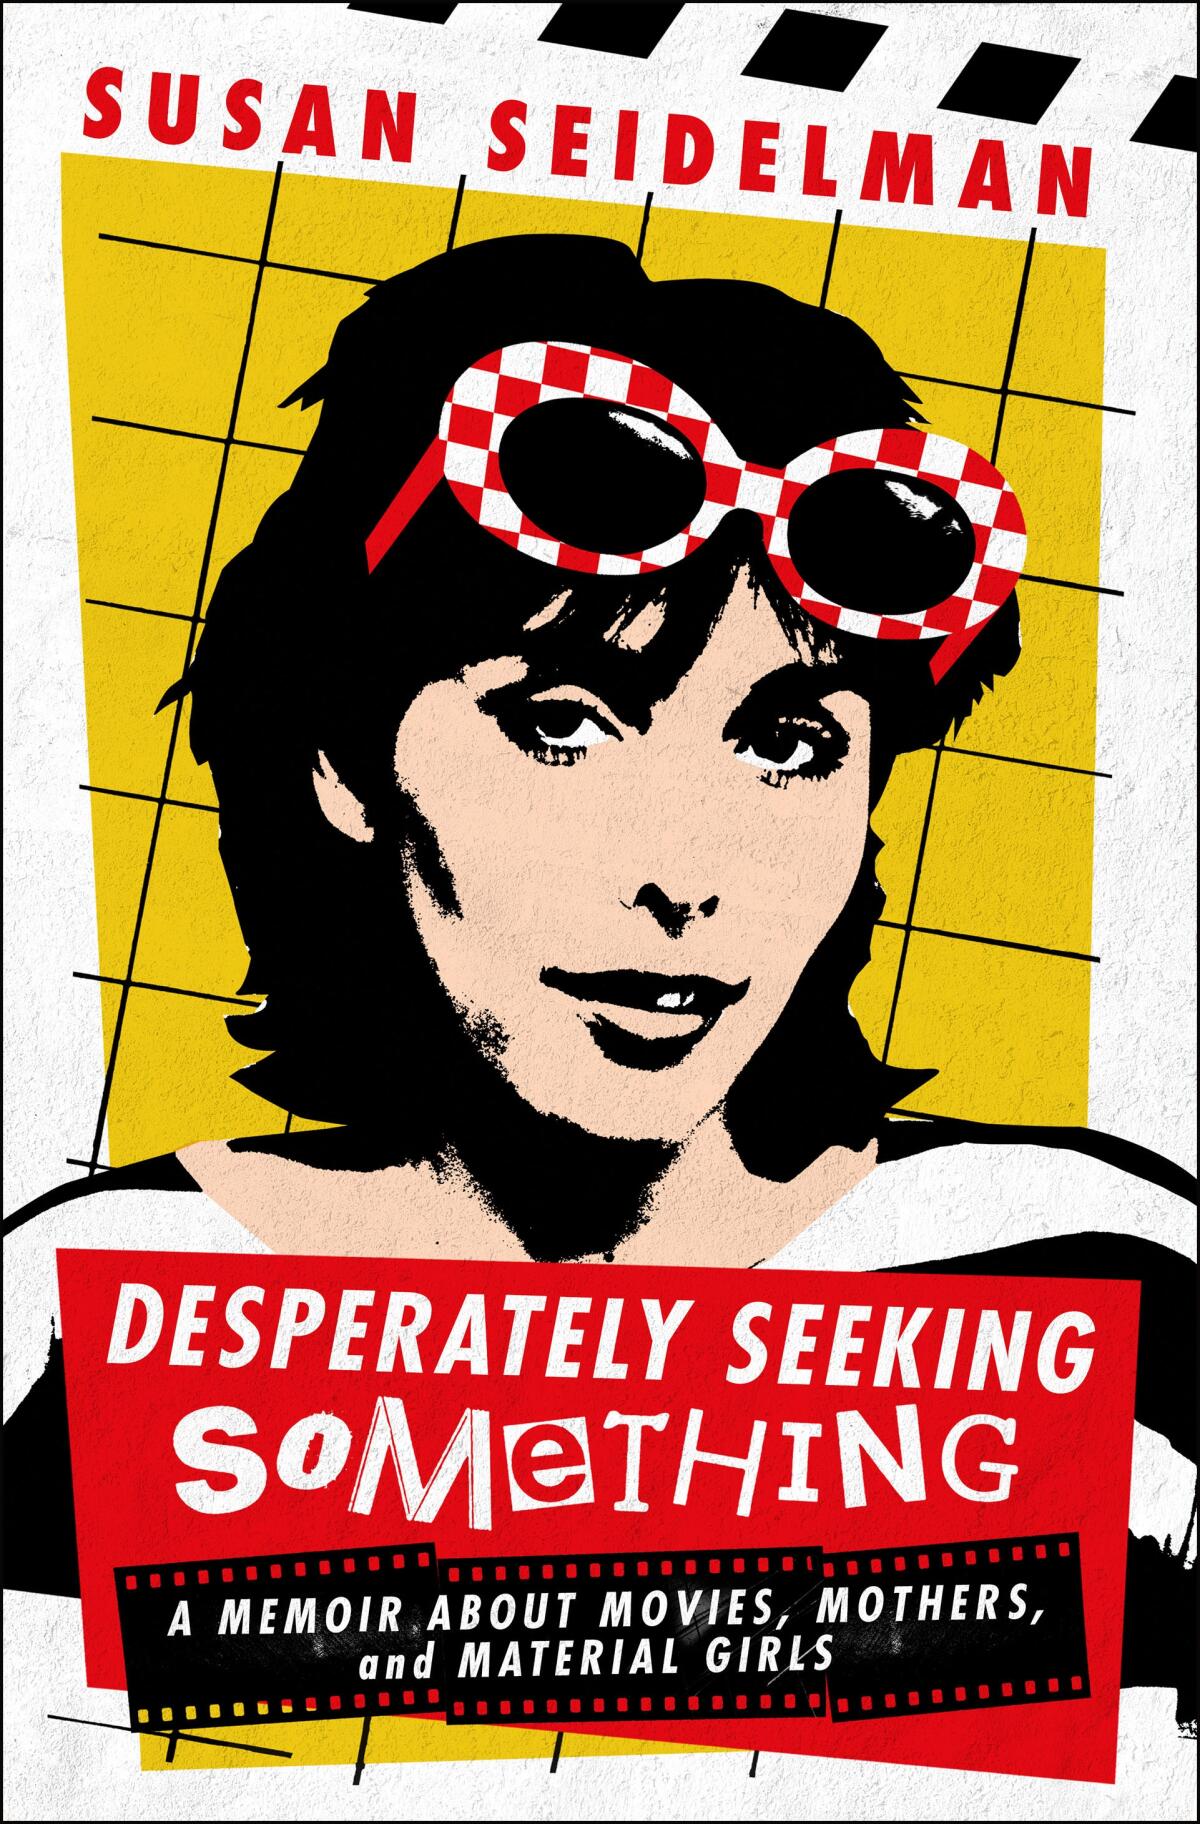 "Desperately Seeking Something" by Susan Seidelman